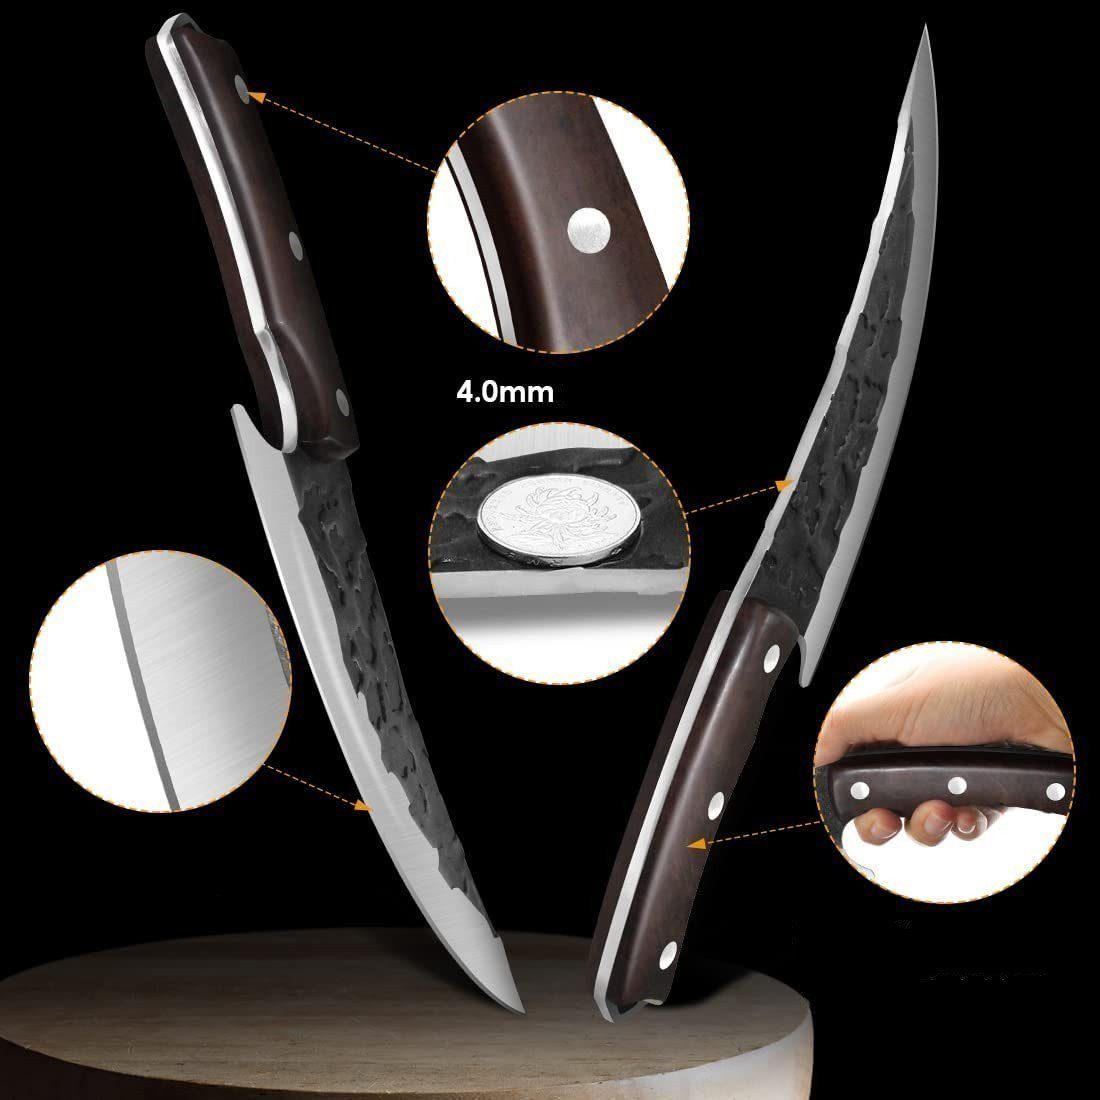 Küchenmesser KingLux Ausbeinmesser Wikinger Handgeschmiedete Hackmesser Messer